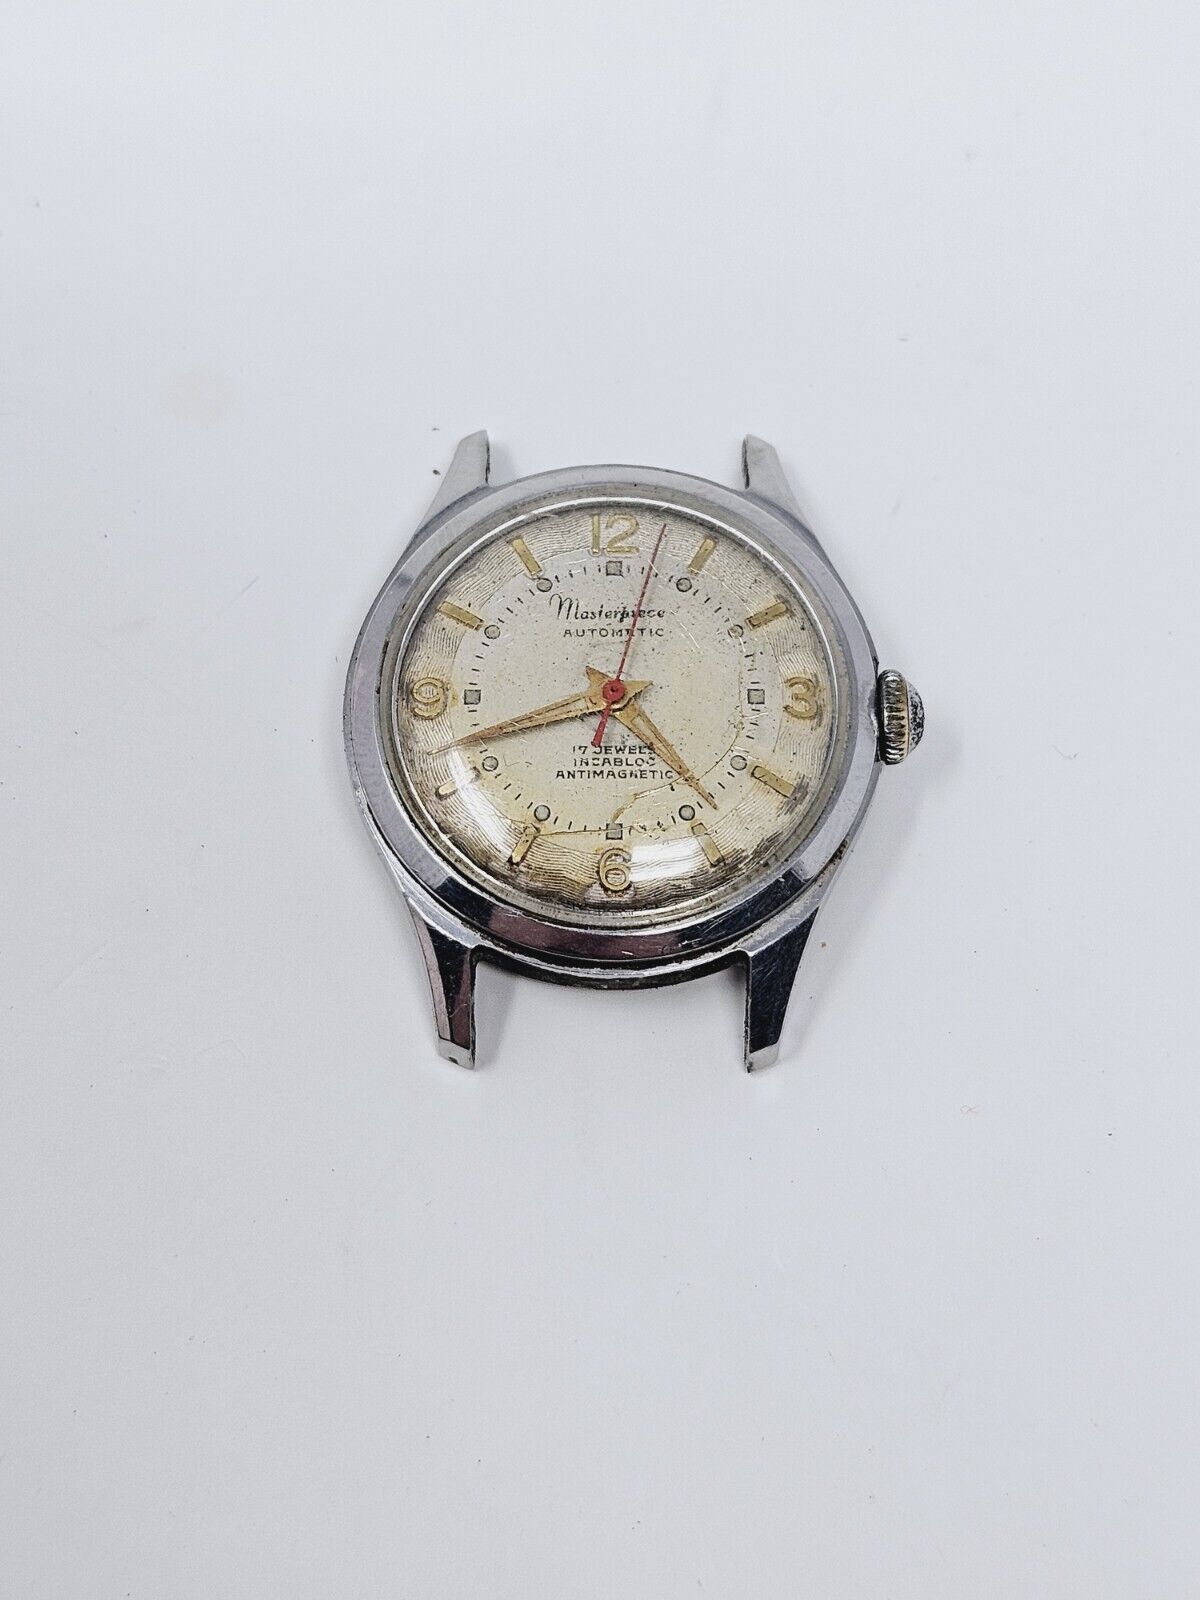 Vintage Masterpiece Automatic 17 Jewels Incabloc Antimagnetic Wrist Watch